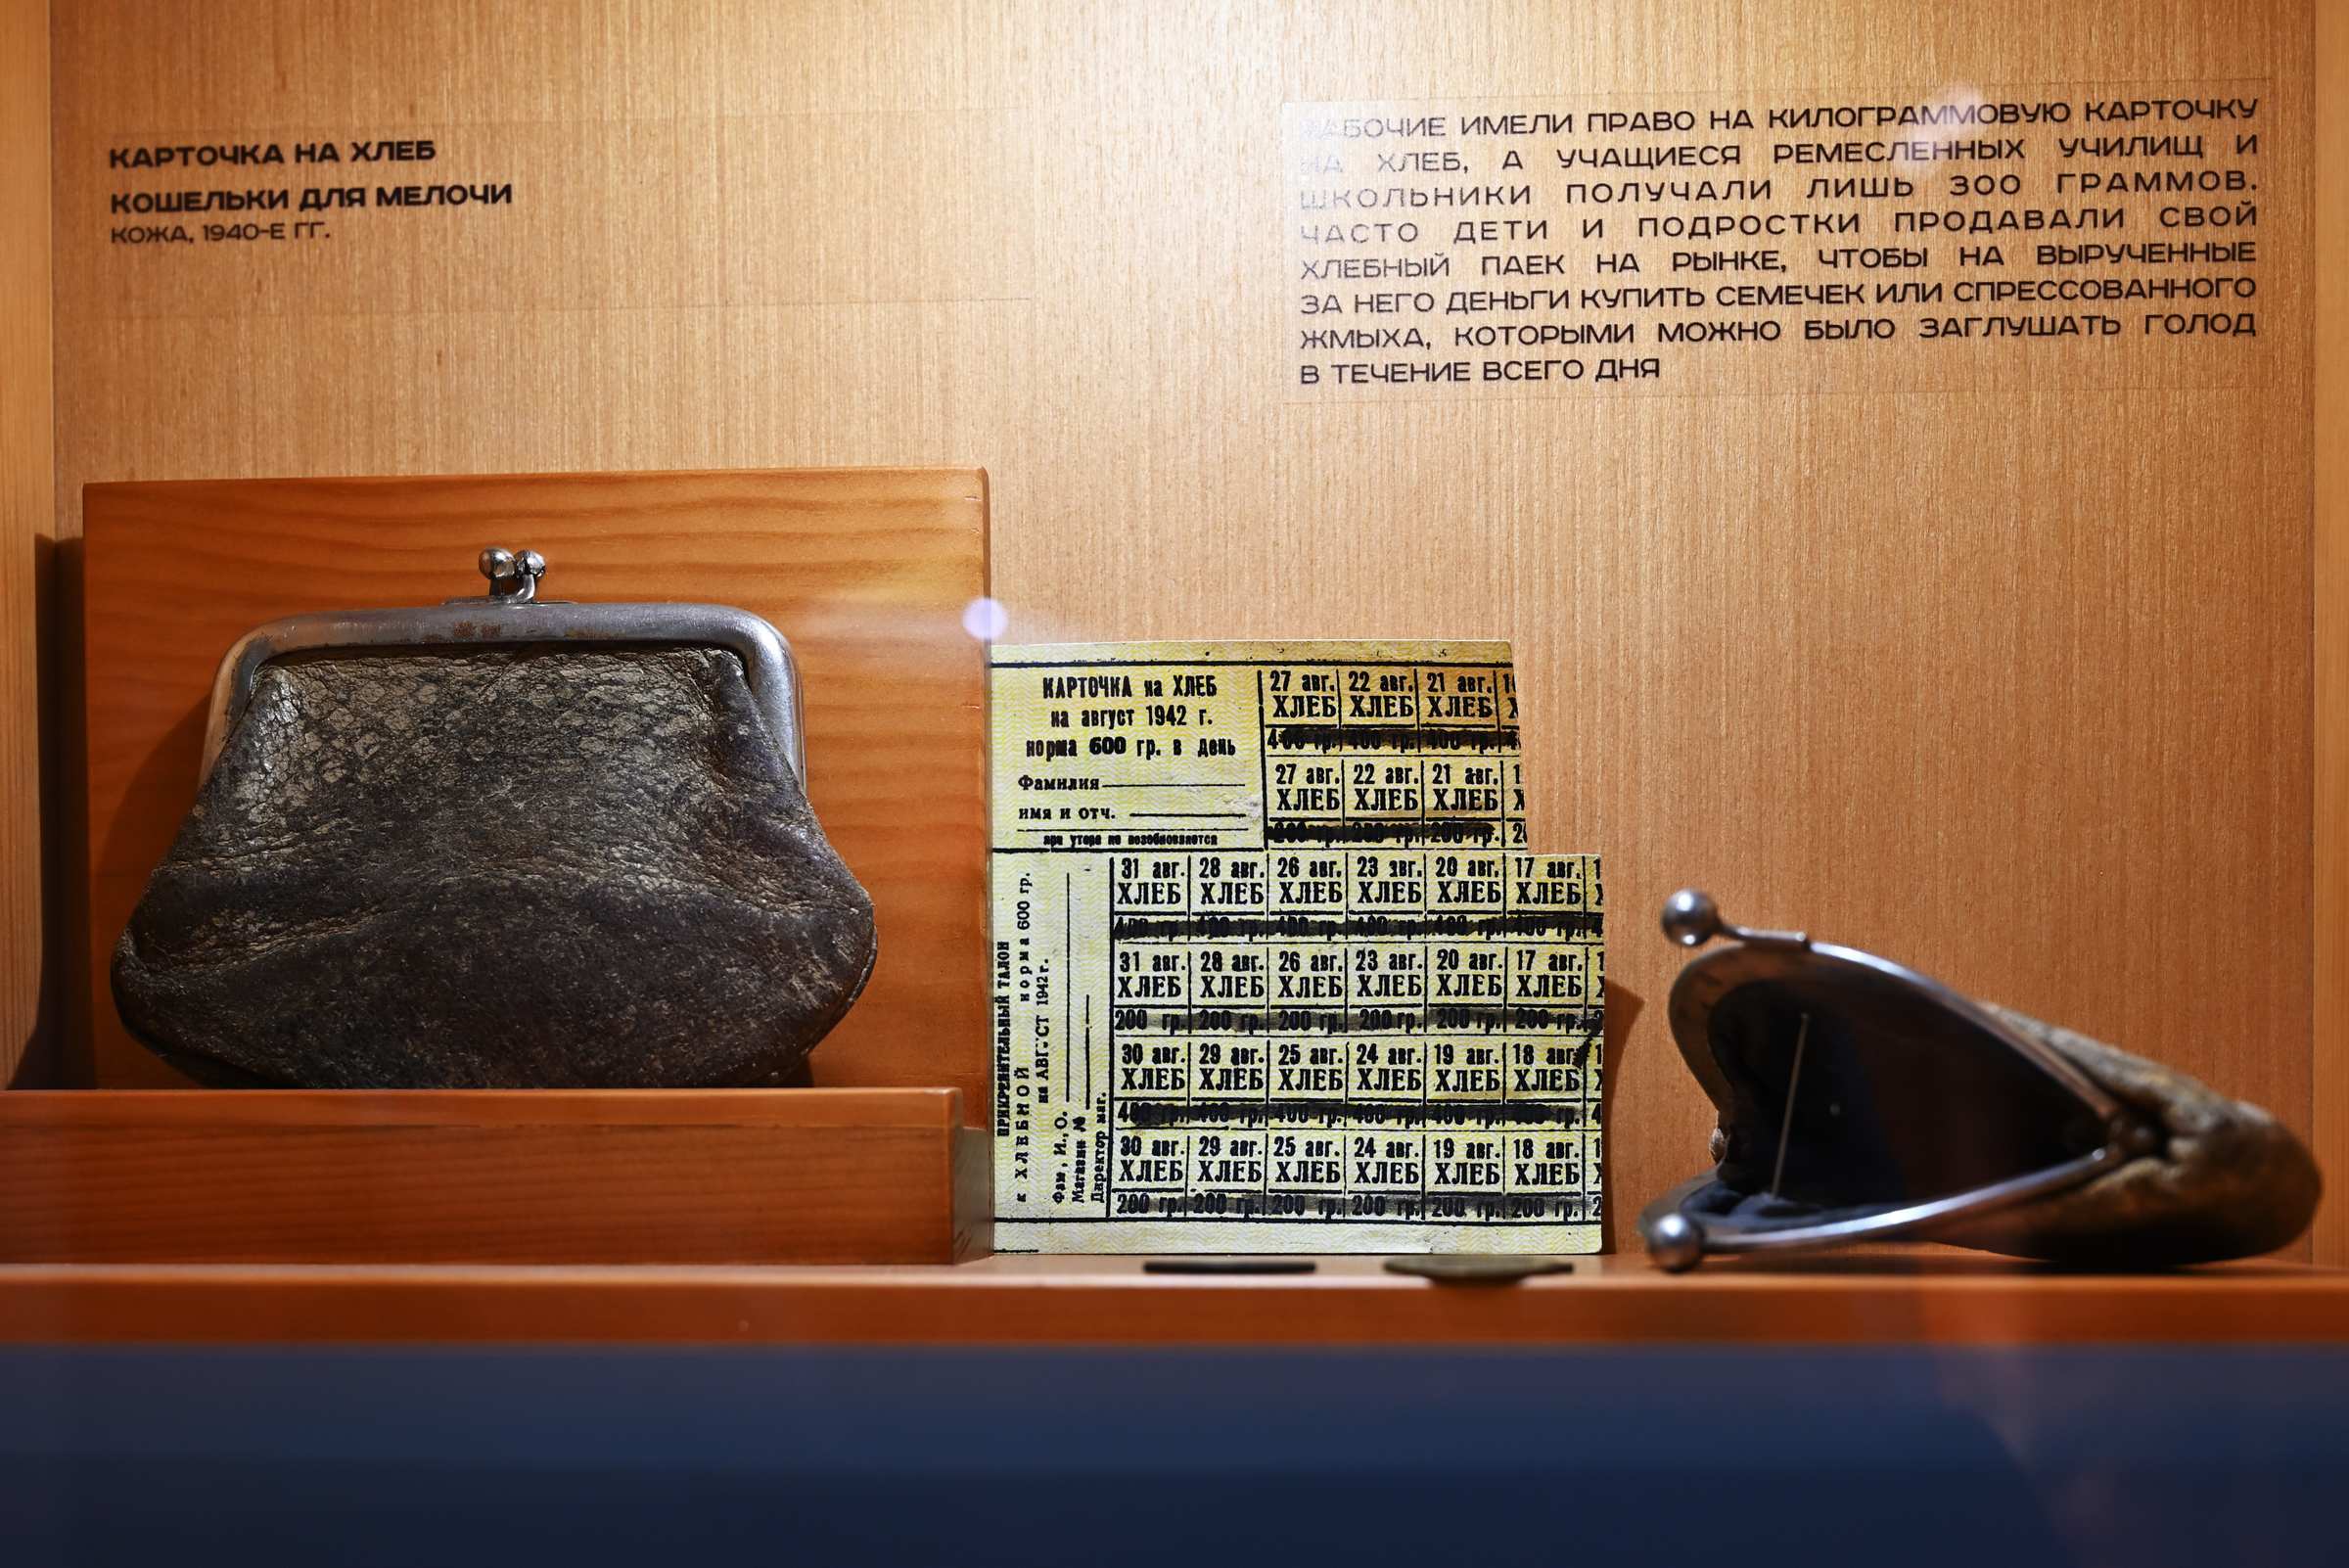 Экспозиция в музее Эльдара Рязанова в Самаре. Карточка на хлеб в Куйбышеве годы Великой Отечественной войны.